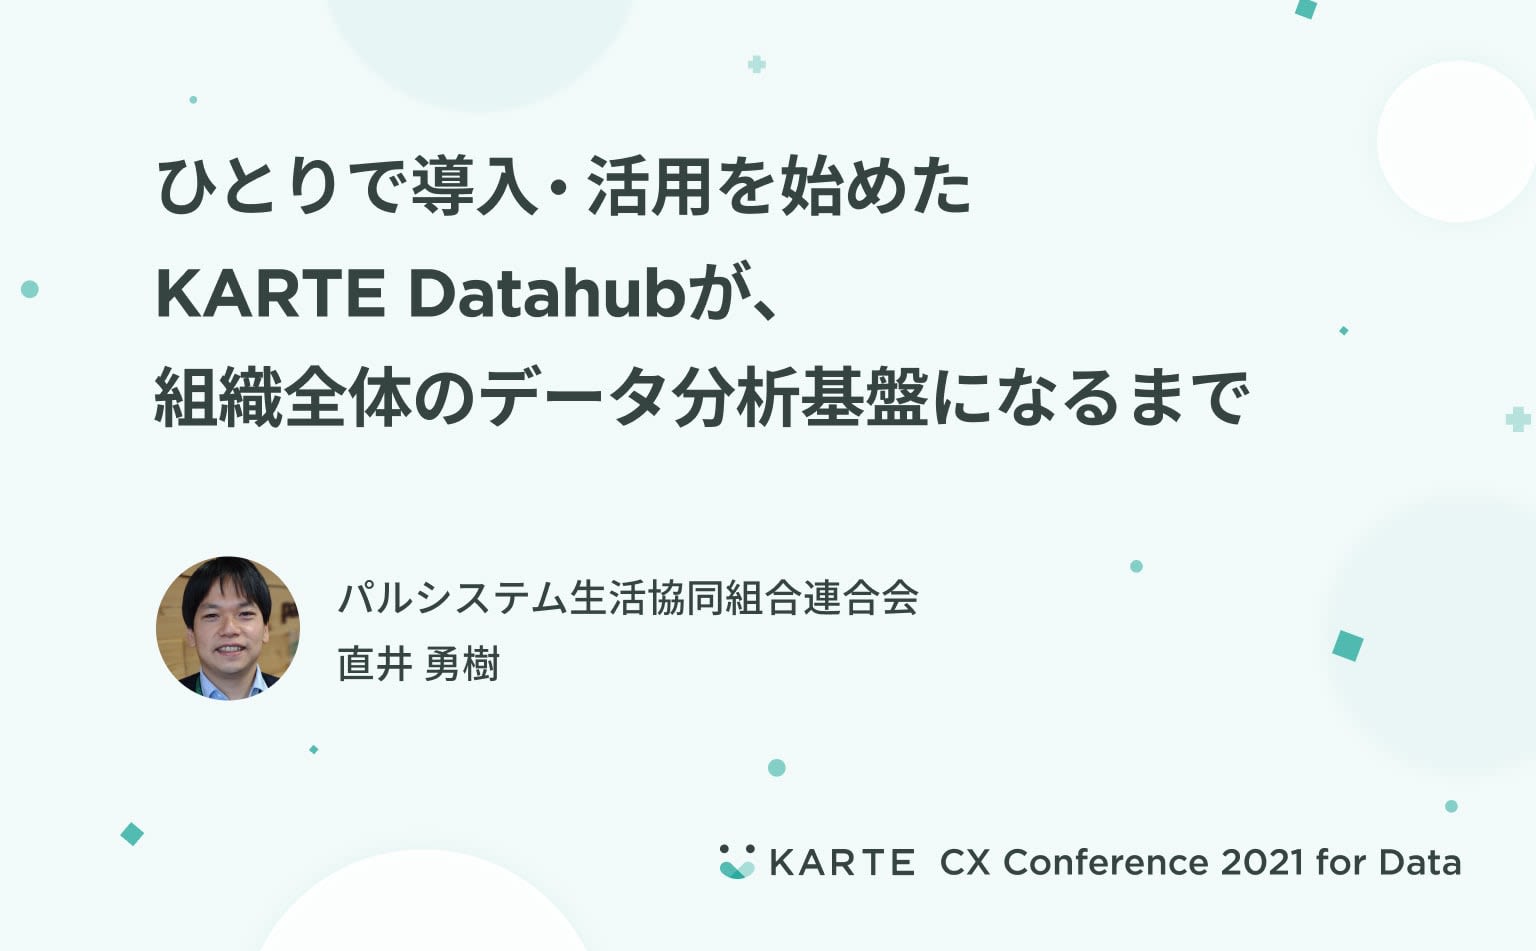 顧客軸のデータ分析を組織の当たり前に。パルシステムにおけるKARTE Datahub導入の第一歩